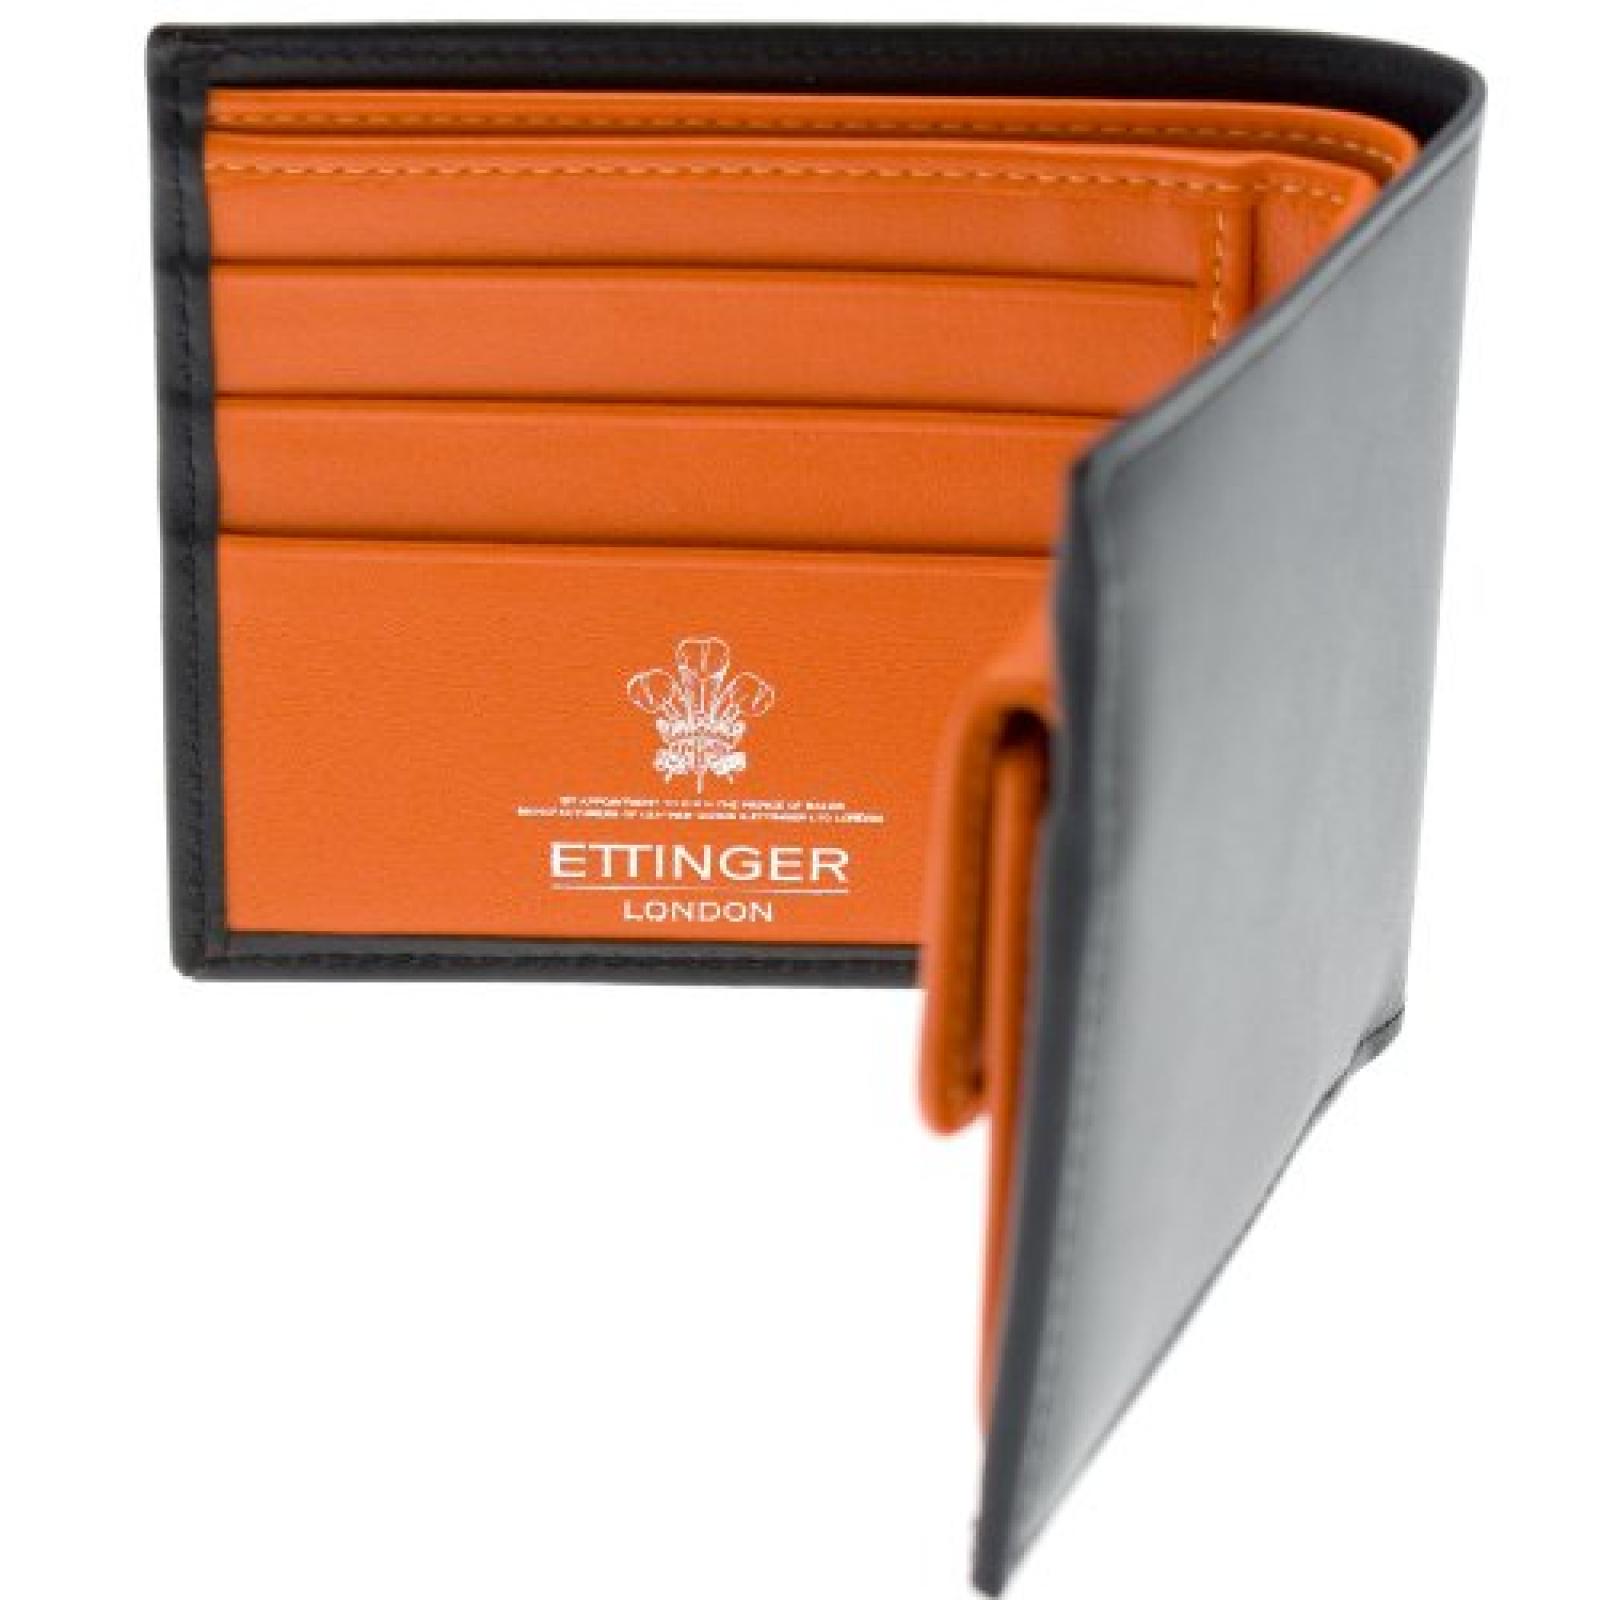 Ettinger - Brieftasche aus Leder mit Münzfach - Schwarz außen / Orange innen 